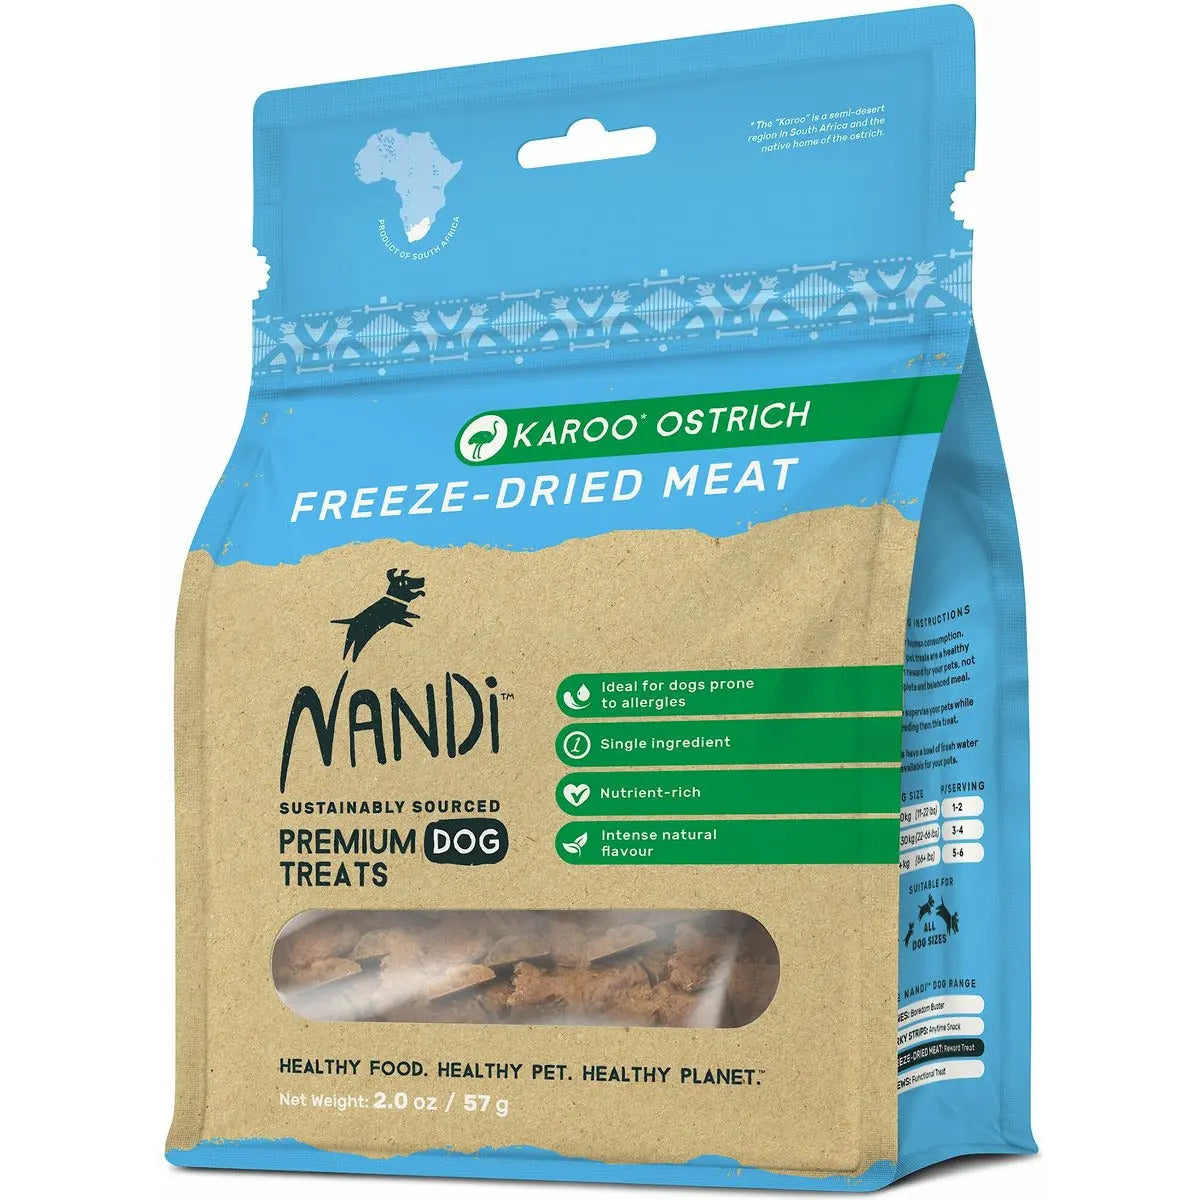 Nandi Karoo Ostrich Freeze-Dried Dog Treats, Nandi